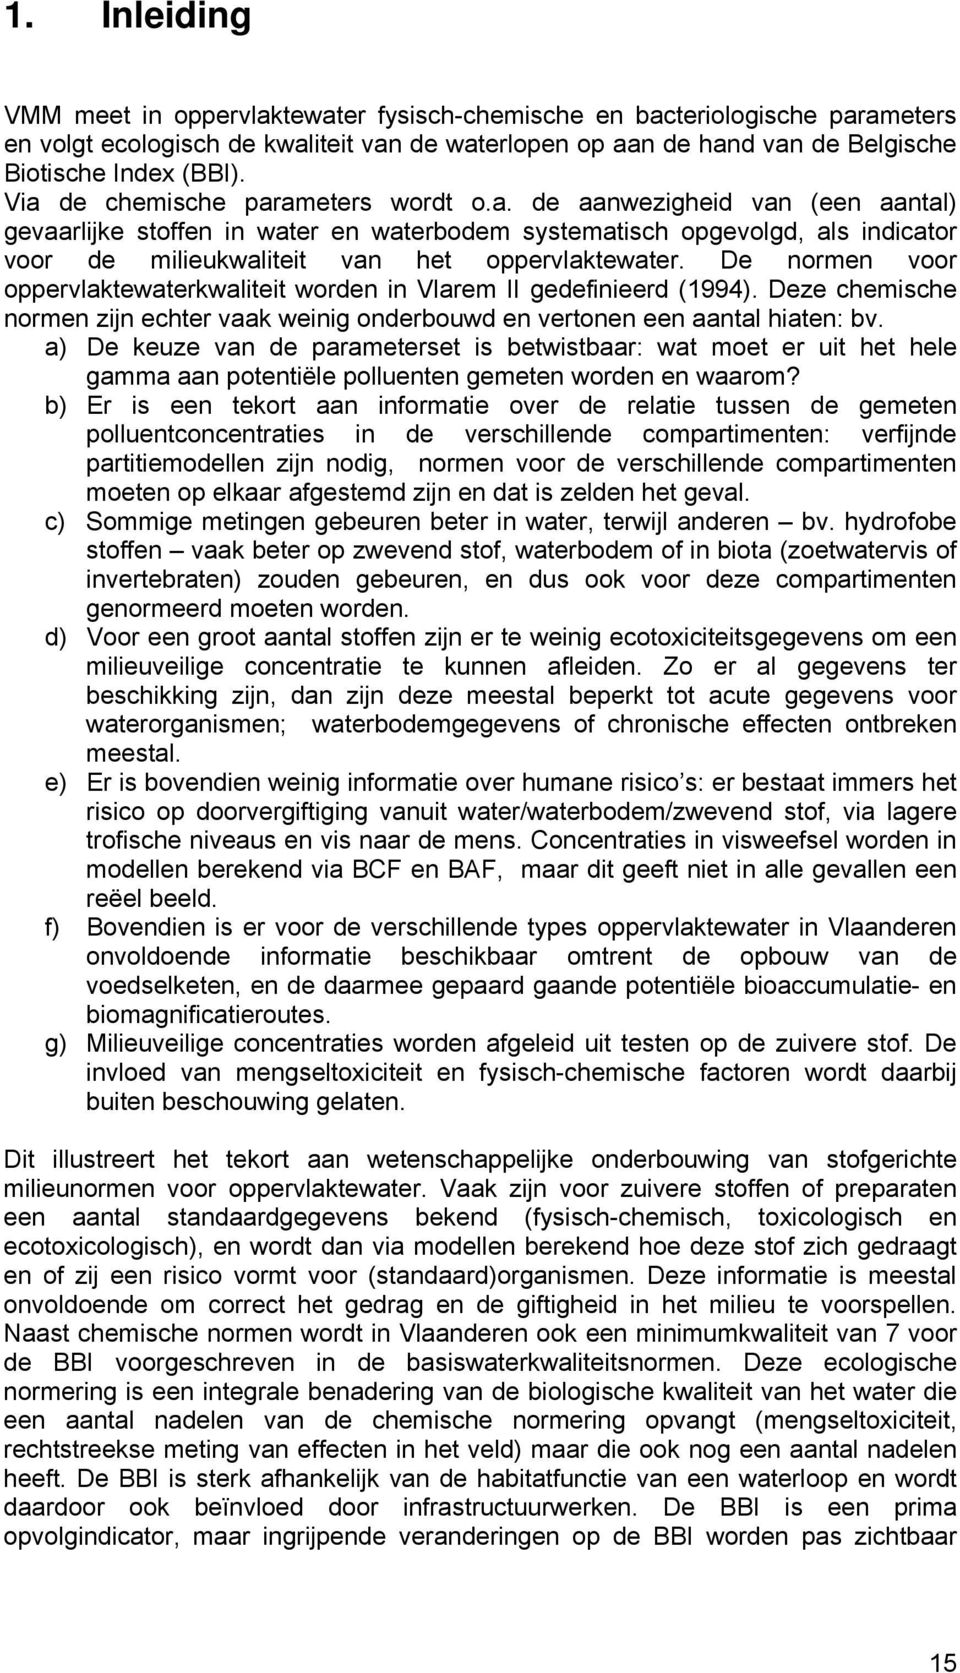 De normen voor oppervlaktewaterkwaliteit worden in Vlarem II gedefinieerd (994). Deze chemische normen zijn echter vaak weinig onderbouwd en vertonen een aantal hiaten: bv.